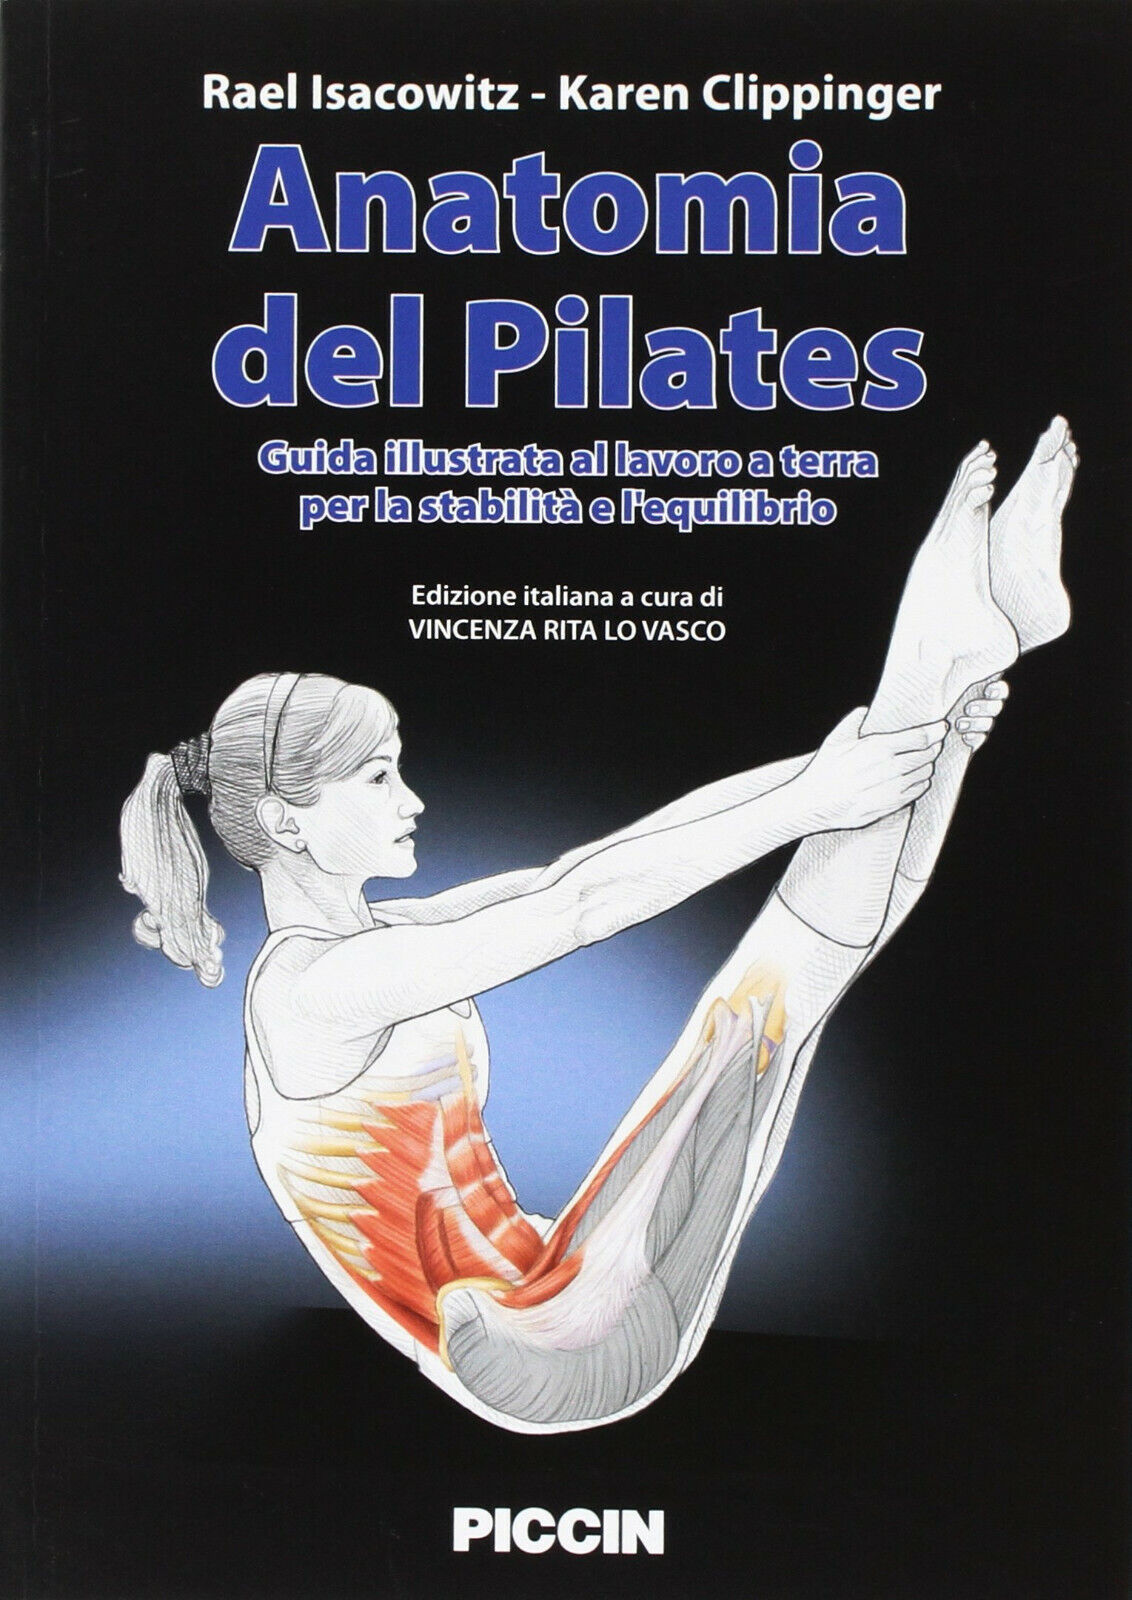 Anatomia del pilates -  Rael Isacowitz, Karen Clippinger - Piccin-Nuova Libraria libro usato